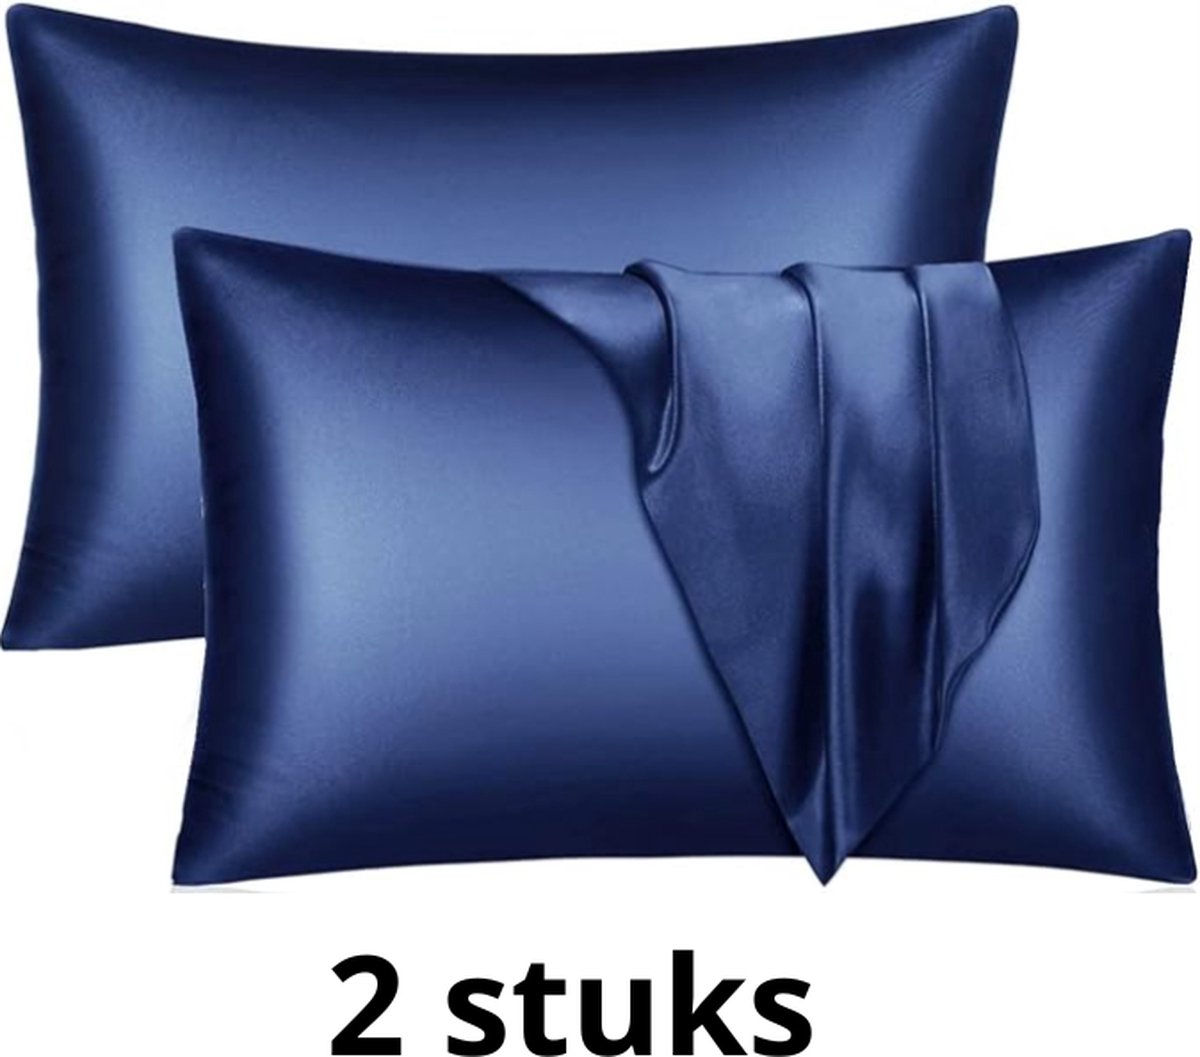 Satijnen kussensloop - 2 kussenslopen - Skin & Hair Pillow sleeve - Marineblauw 51x66cm - Beauty kussen - zijden kussensloop - Huidverzorging - Haarverzorging - Anti Allergeen - Navy blauw- zijden kussensloop - Beauty kapsel sloop